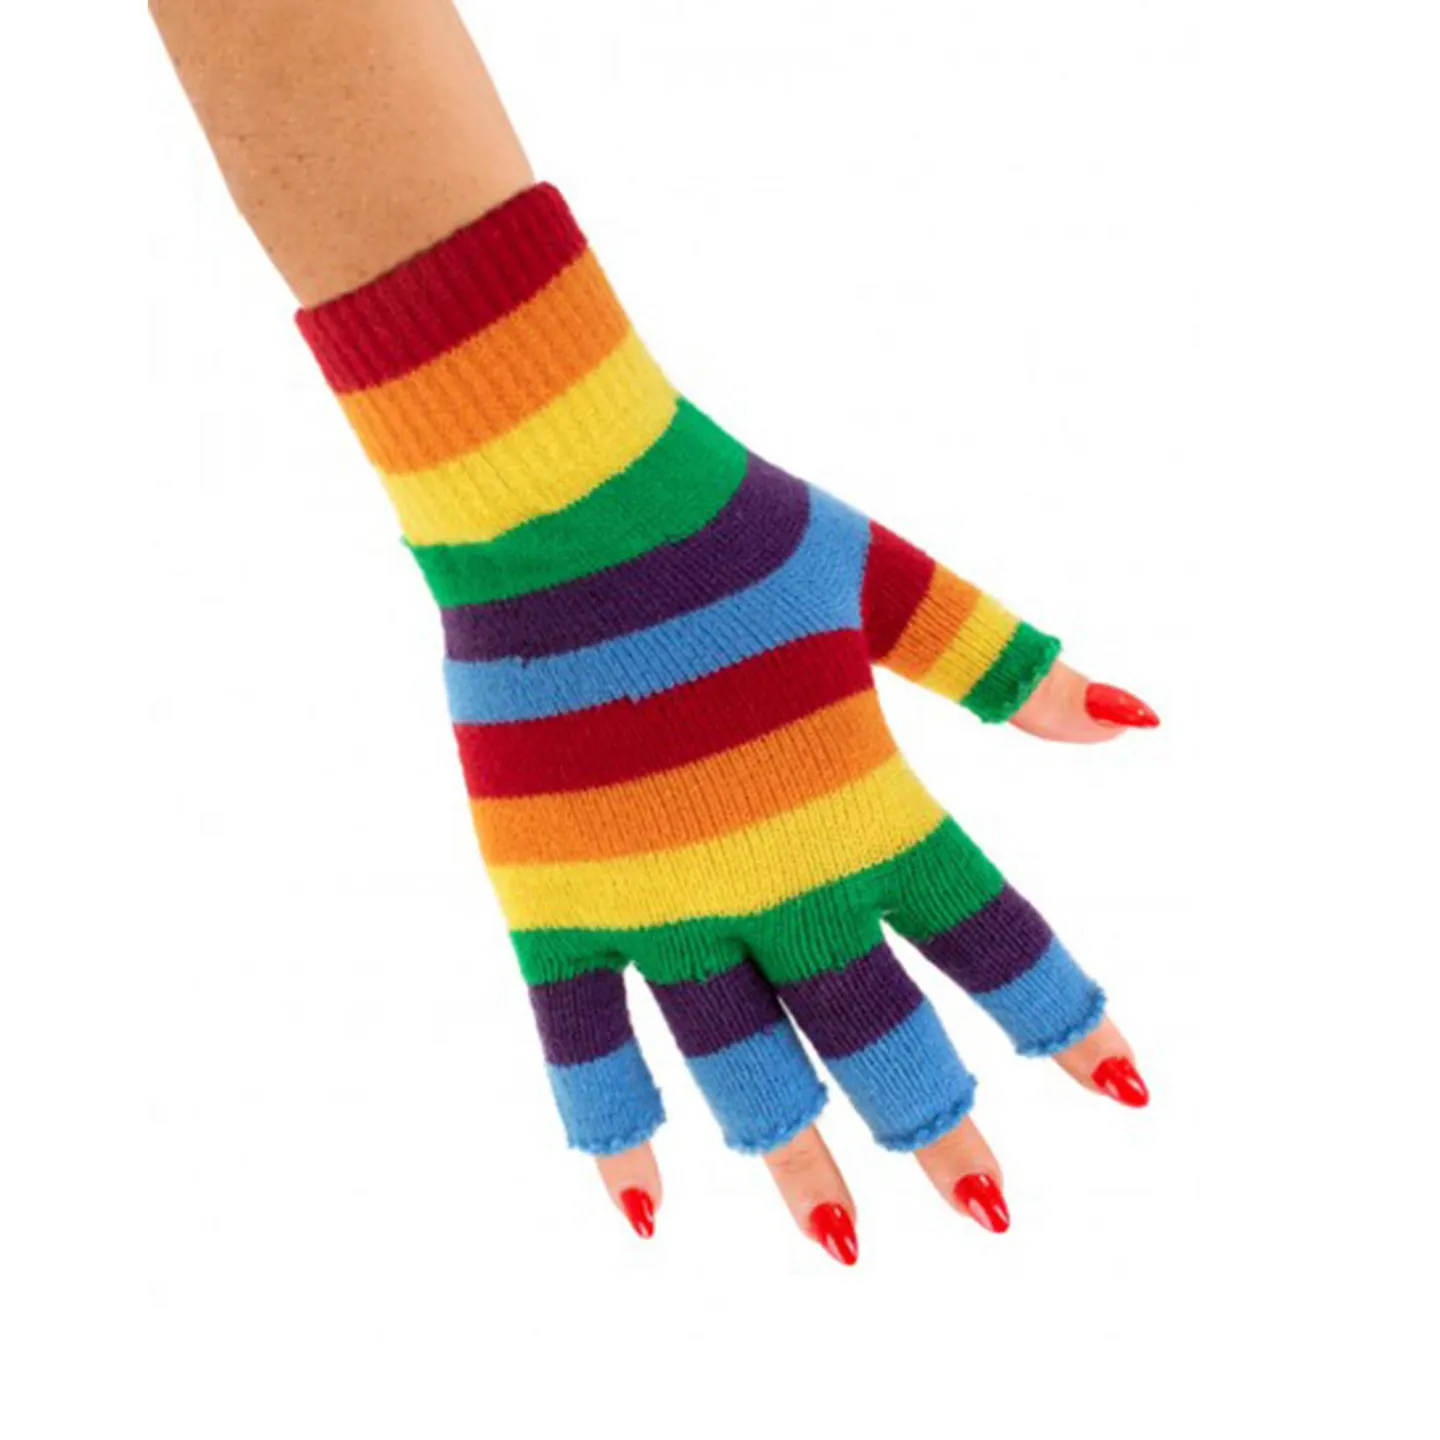 Handschoenen regenboog.